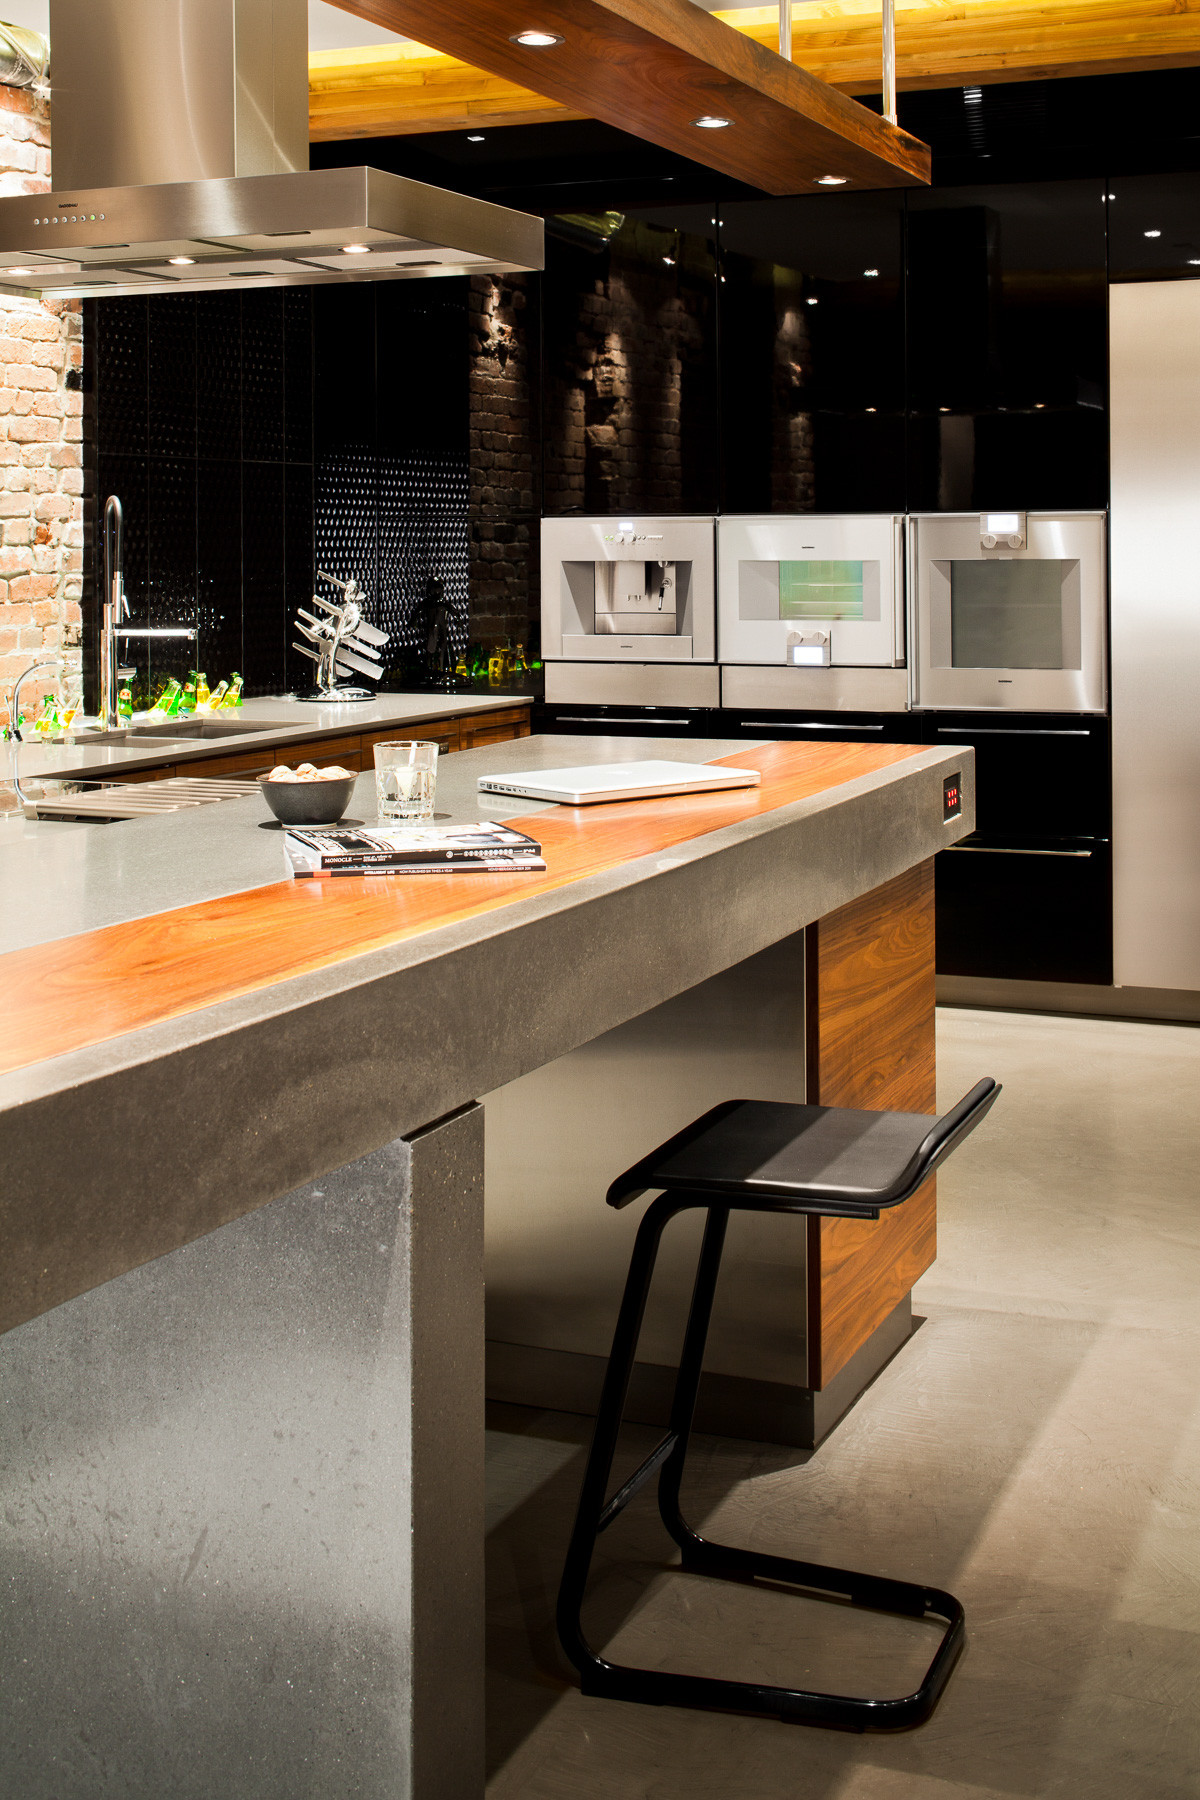 170 Bachelor Pad Kitchens ideas  kitchen inspirations, kitchen design,  kitchen remodel